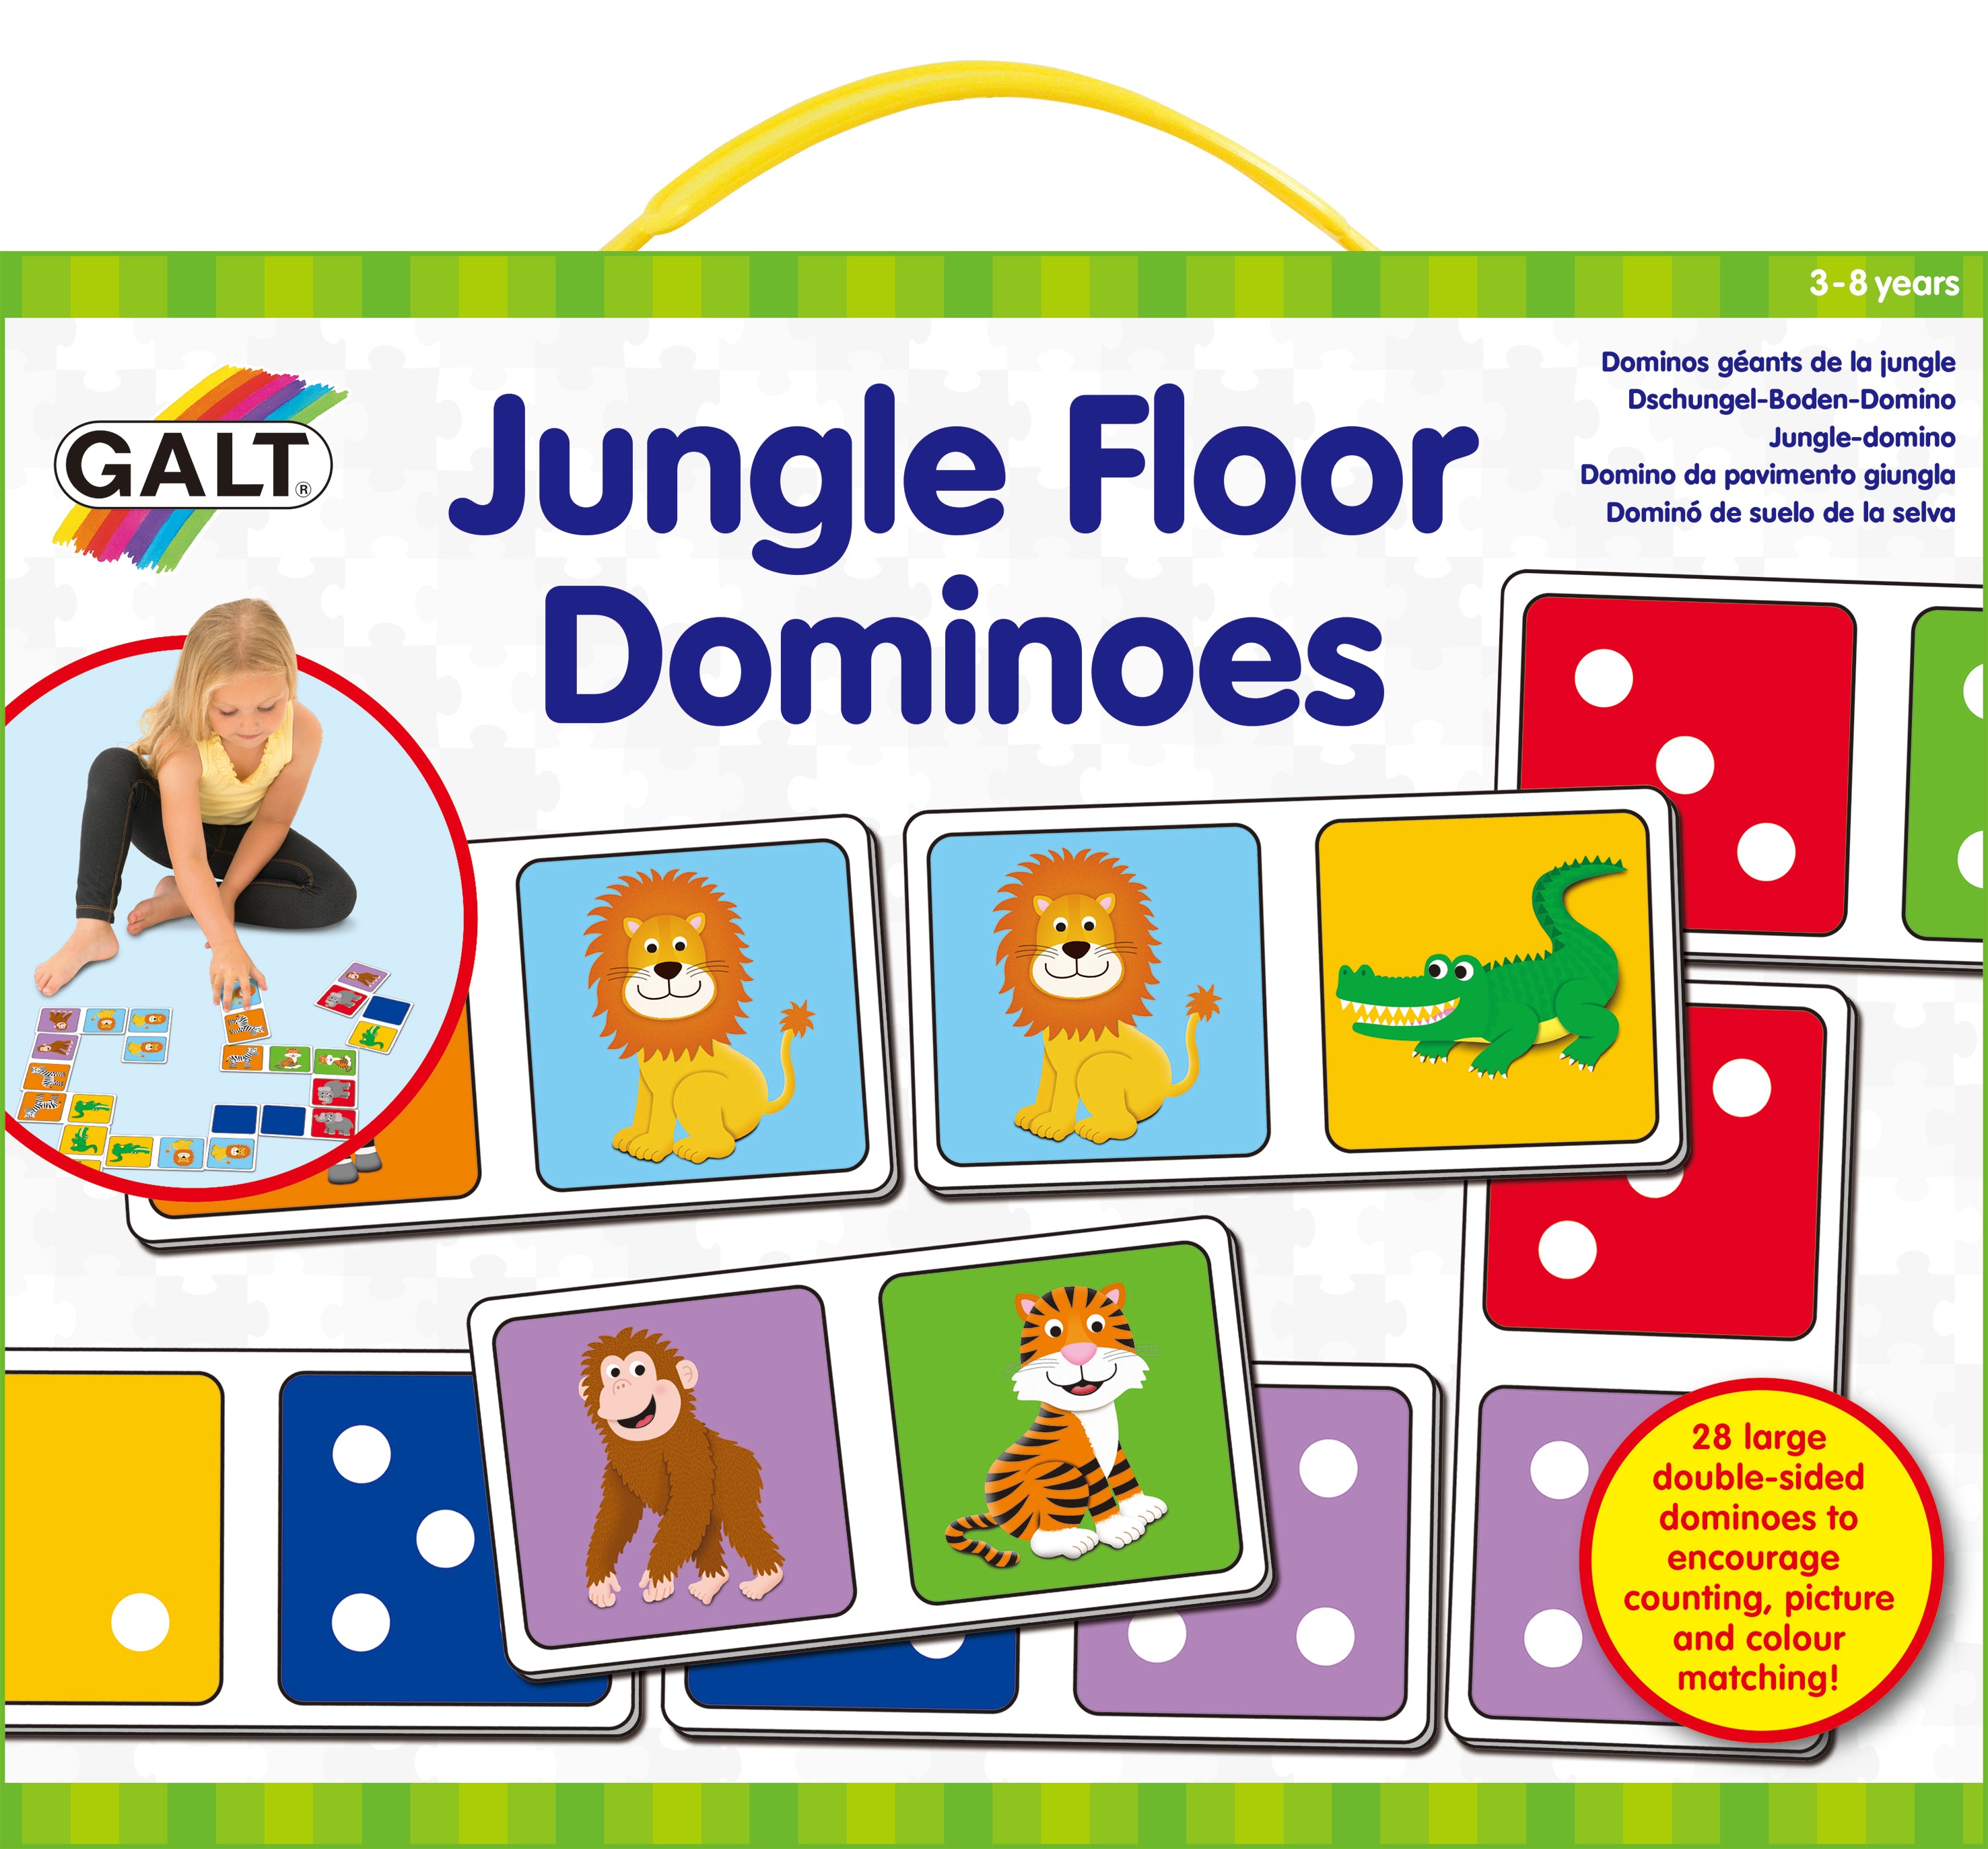 Galt - Jungle Floor Dominoes